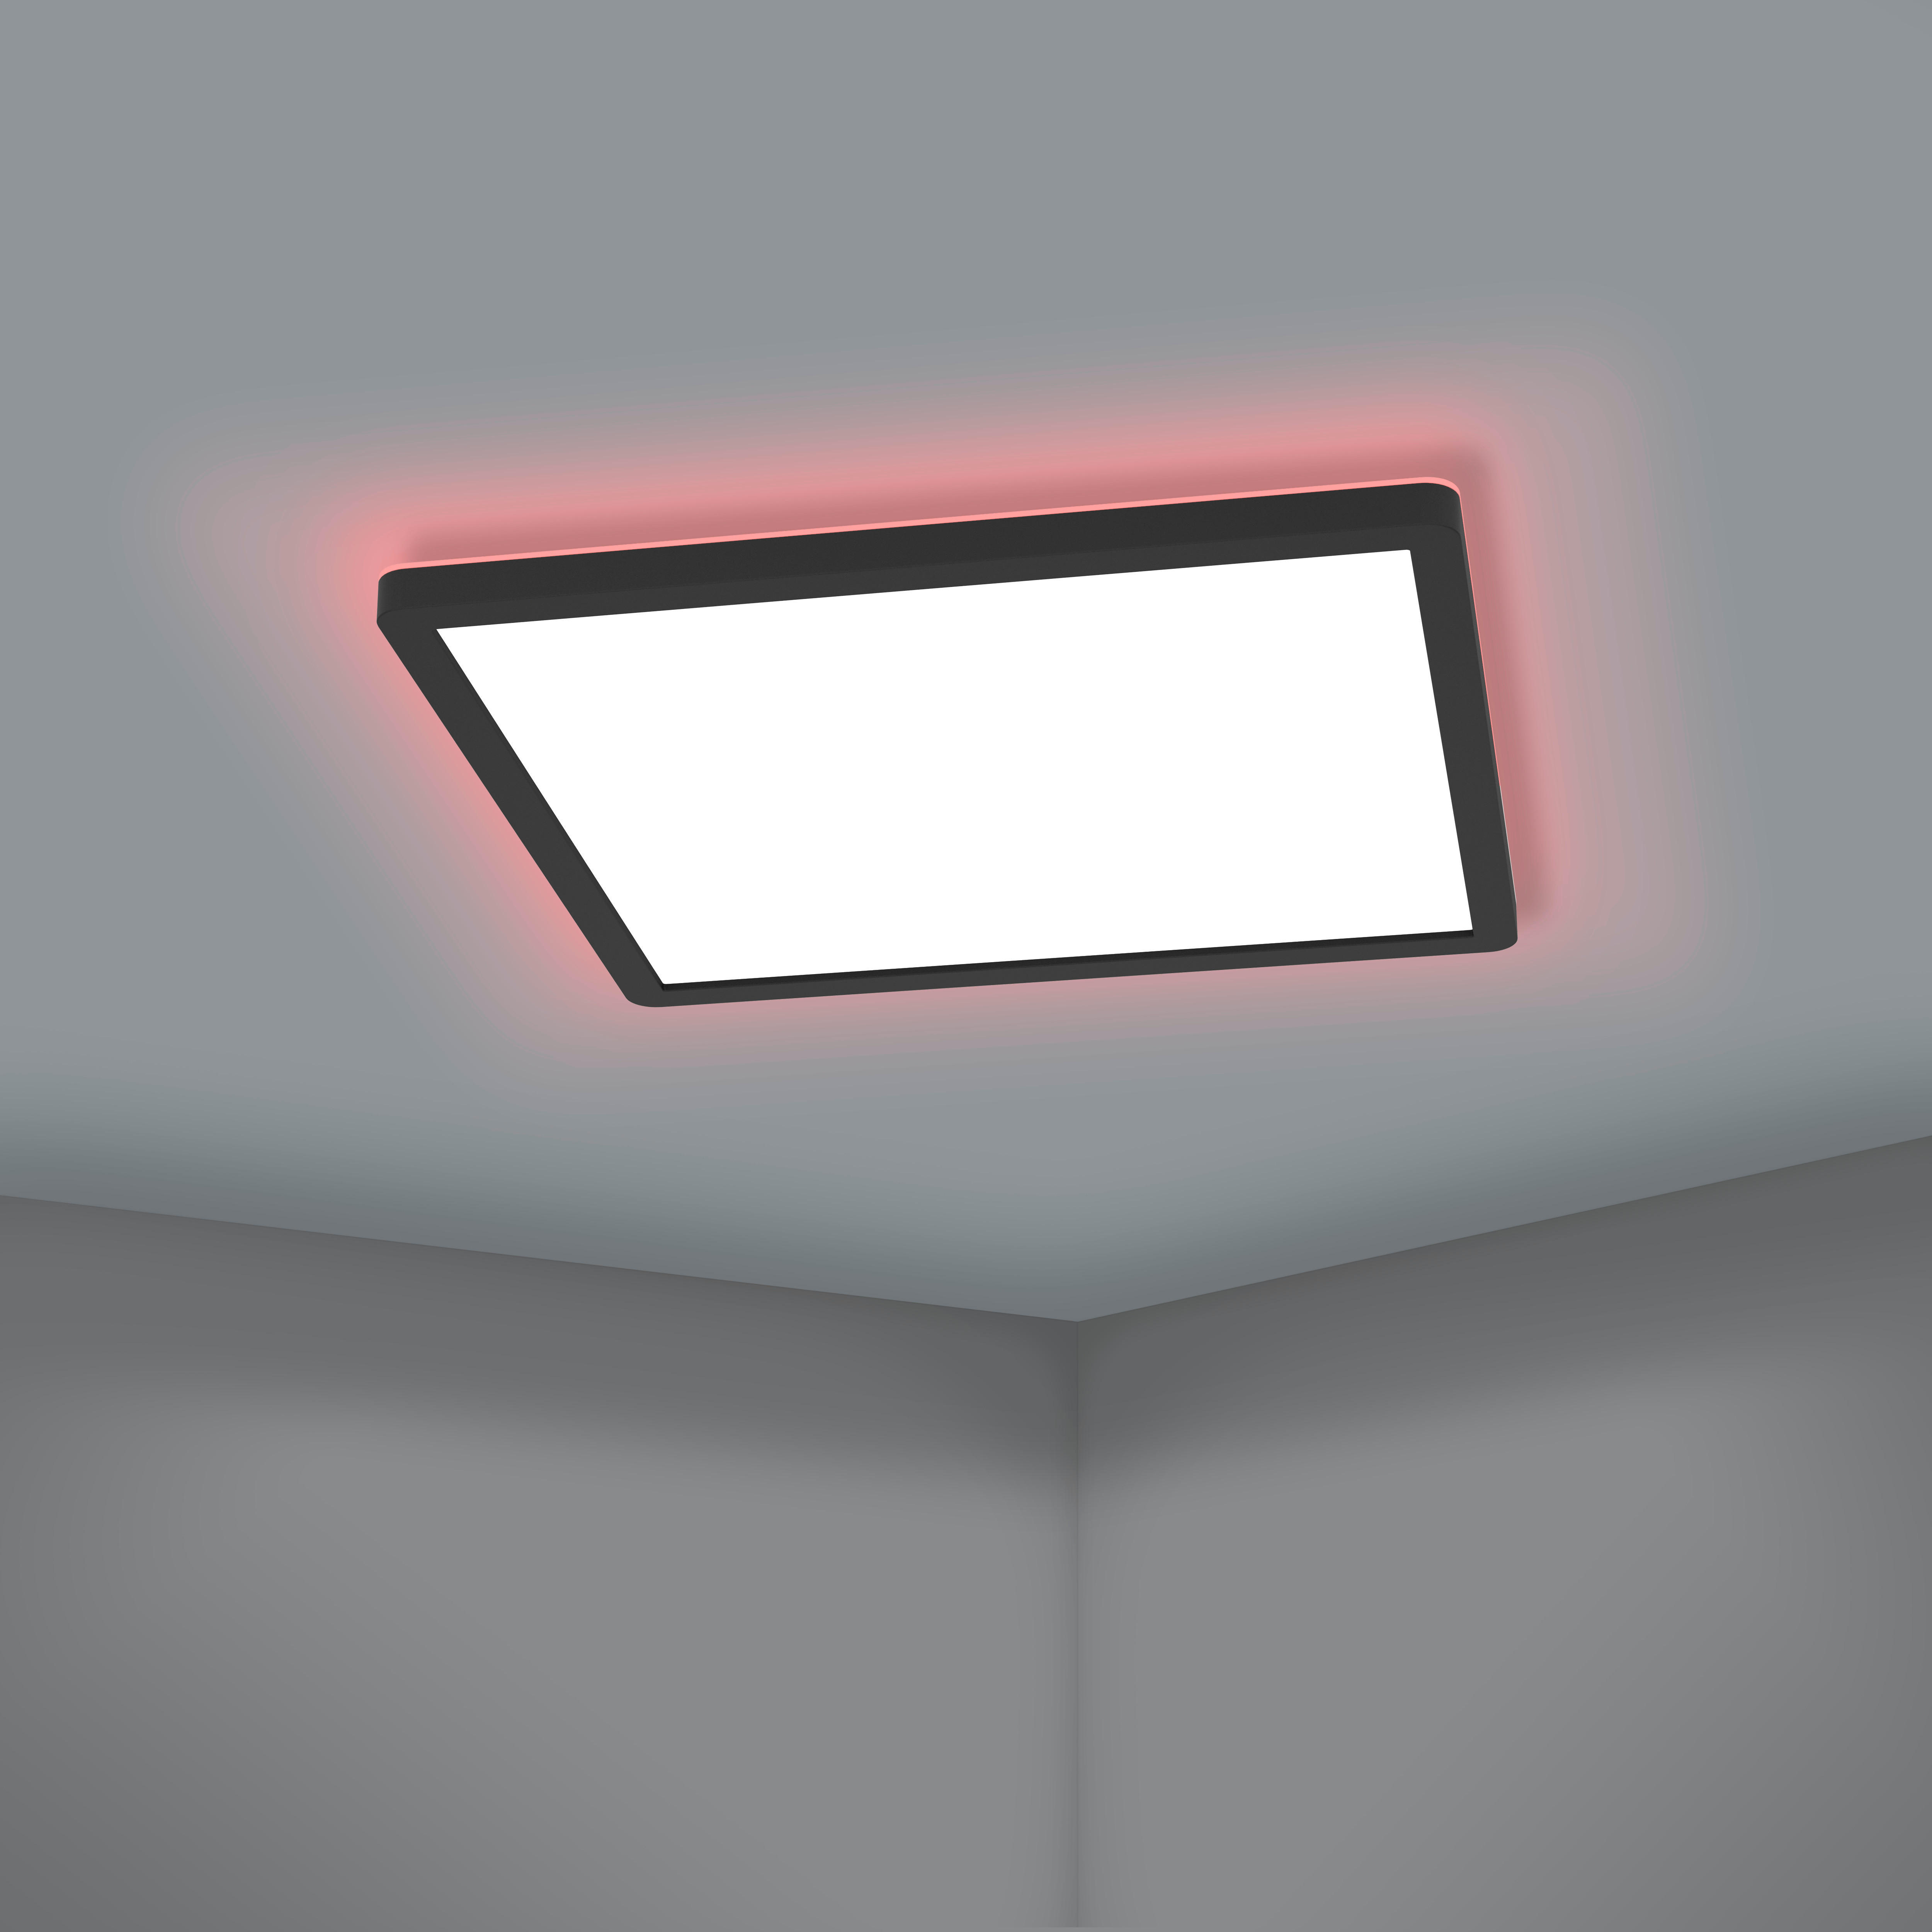 LED-DECKENLEUCHTE 42/42/2,5 cm    - Schwarz/Weiß, Basics, Kunststoff (42/42/2,5cm) - Eglo